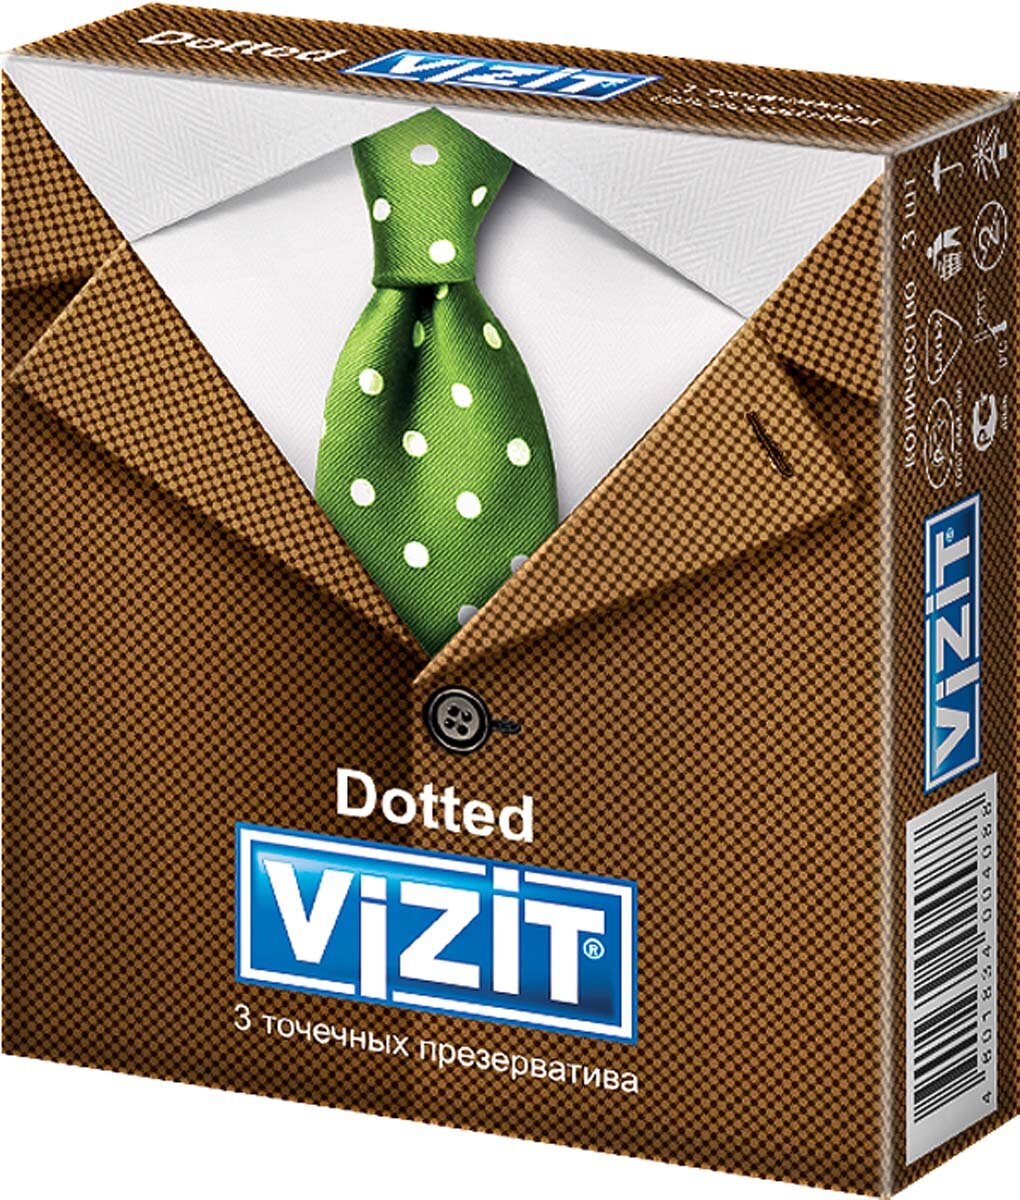 VIZIT Dotted презервативы точечные 3 шт.